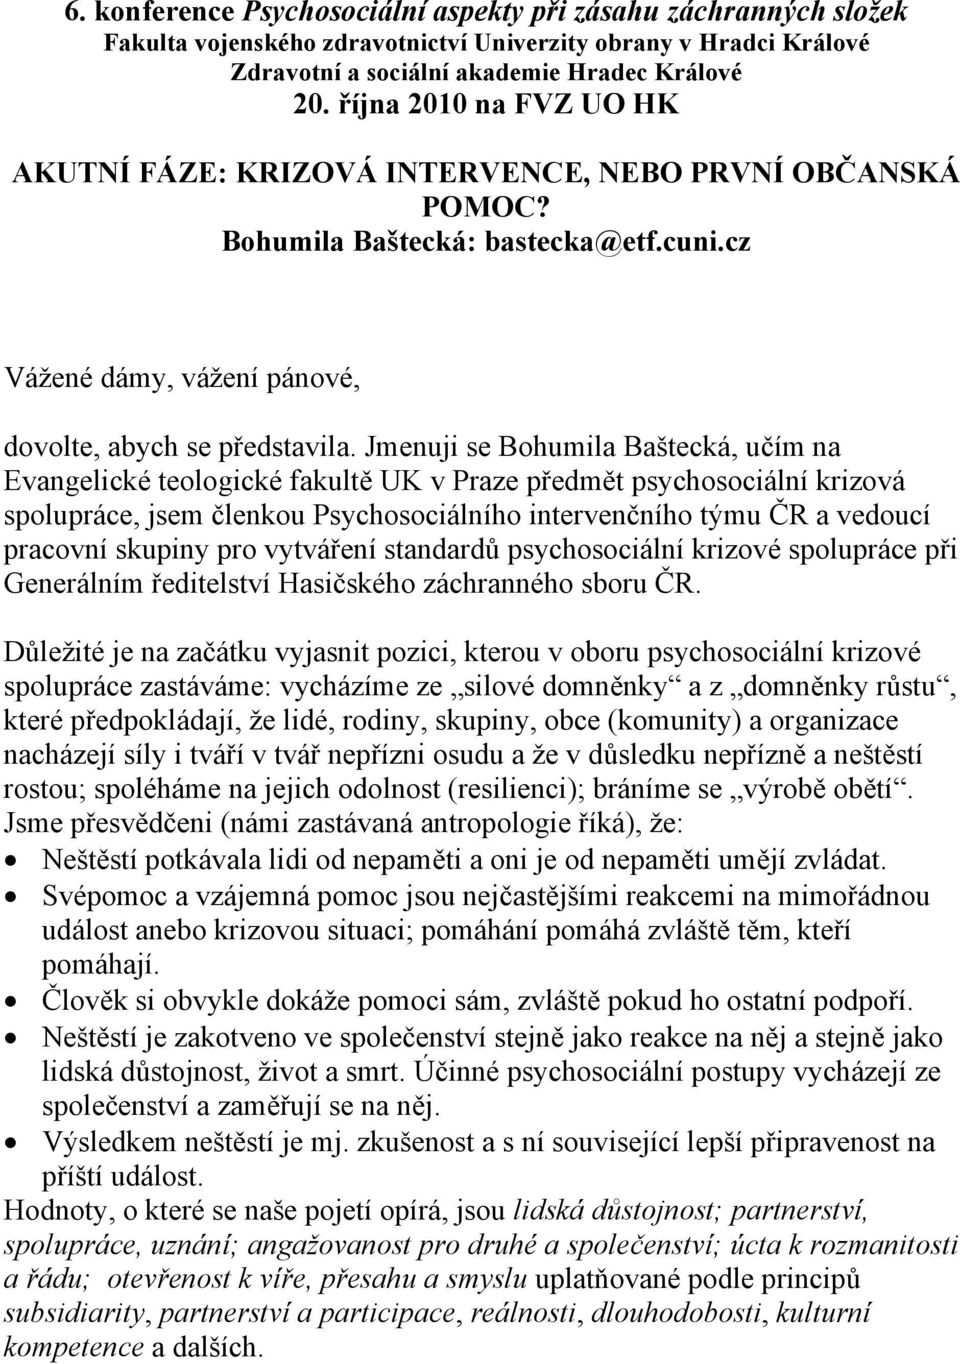 Jmenuji se Bohumila Baštecká, učím na Evangelické teologické fakultě UK v Praze předmět psychosociální krizová spolupráce, jsem členkou Psychosociálního intervenčního týmu ČR a vedoucí pracovní